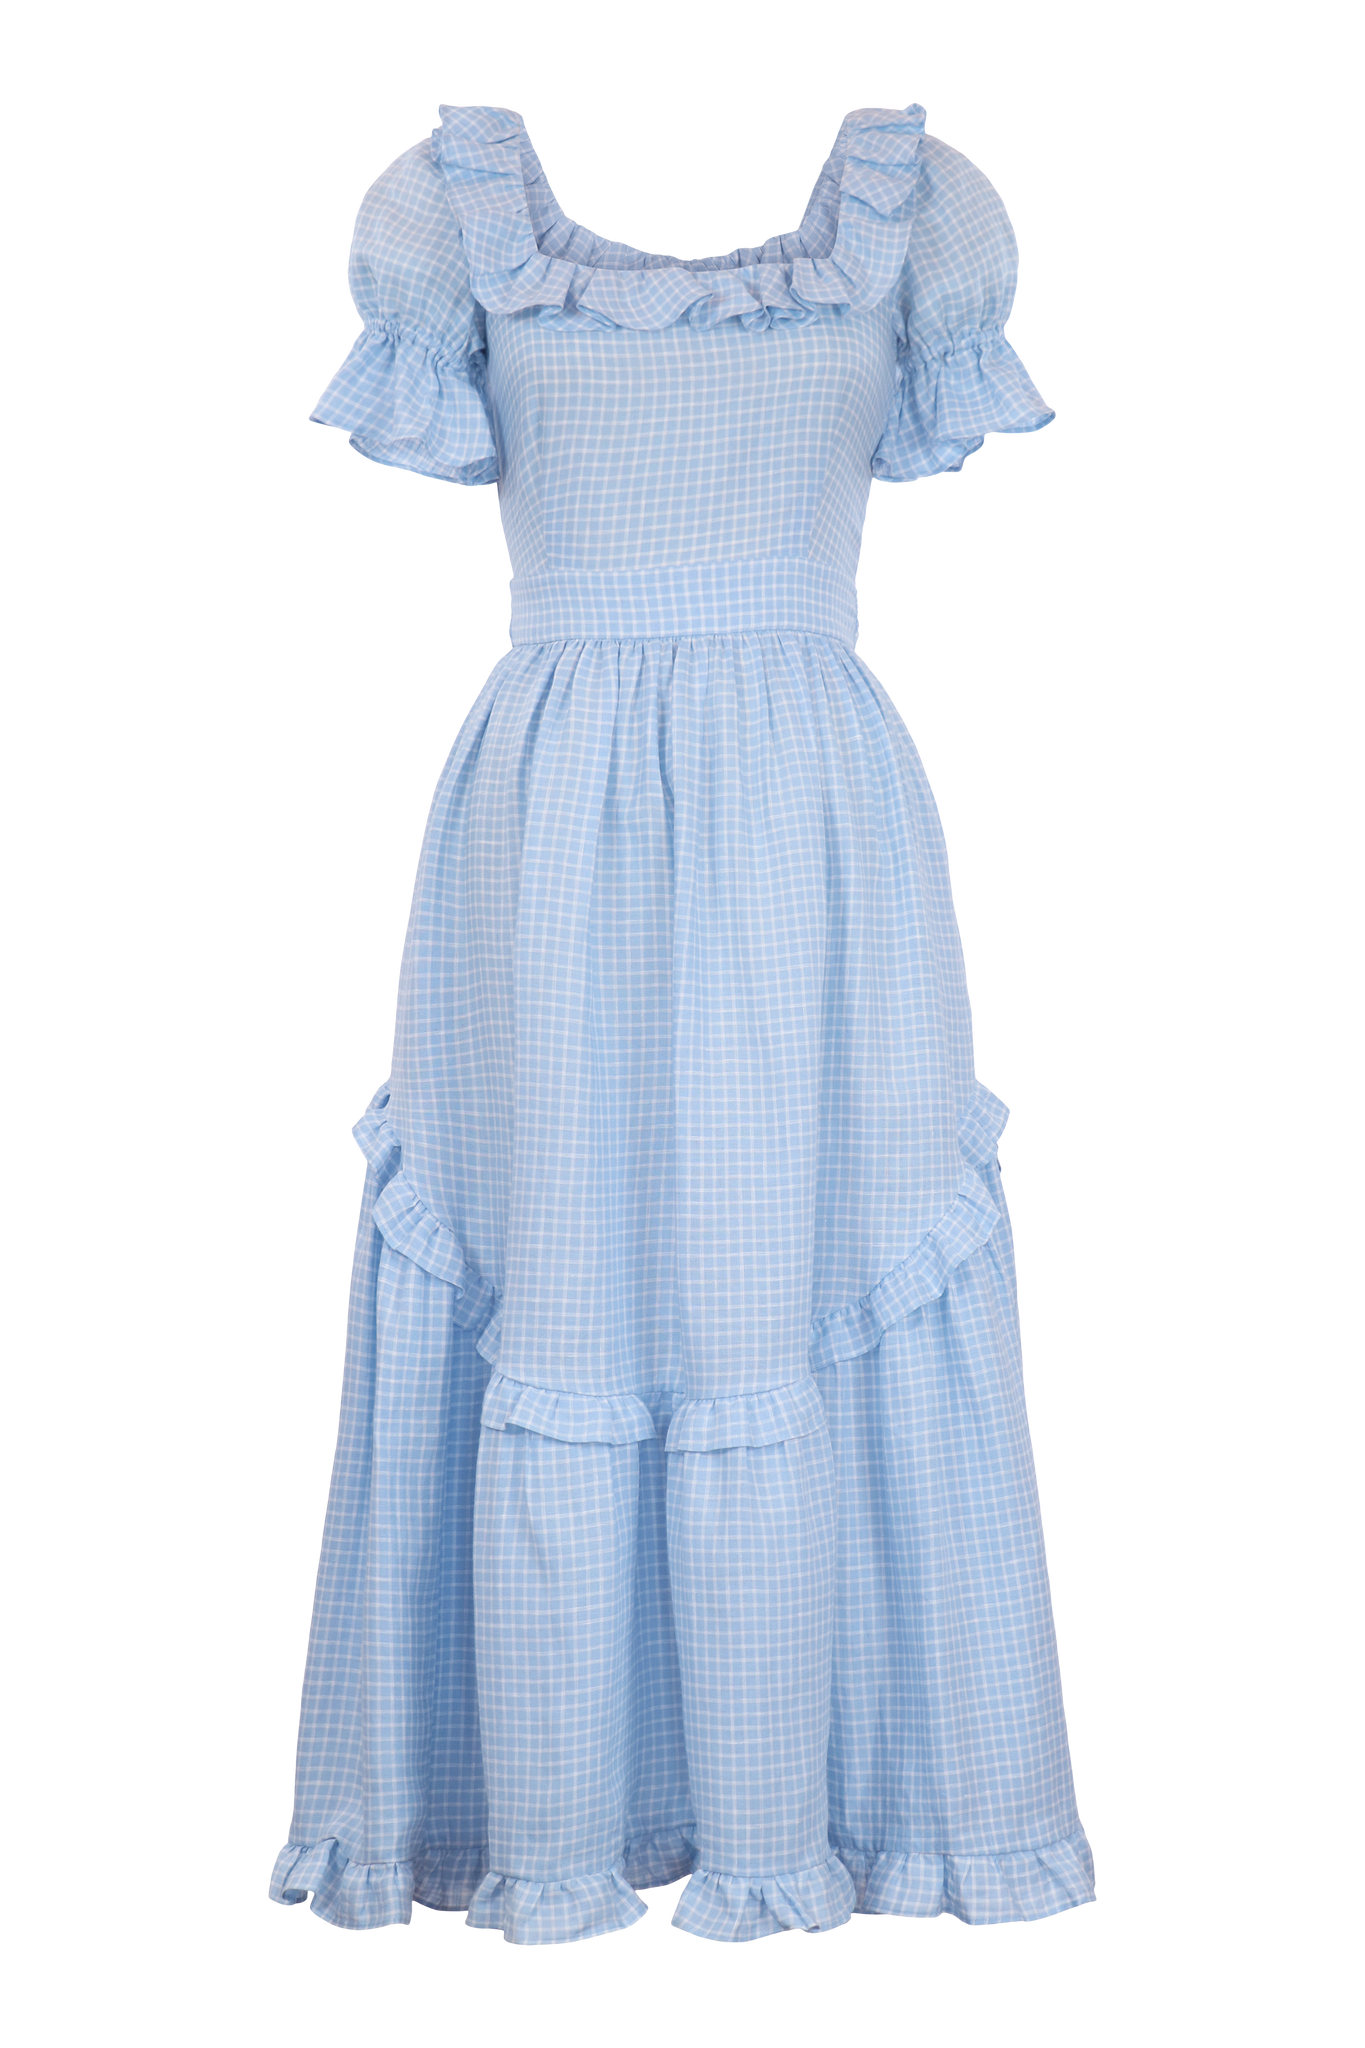 Adeline Dress in Blue Gingham